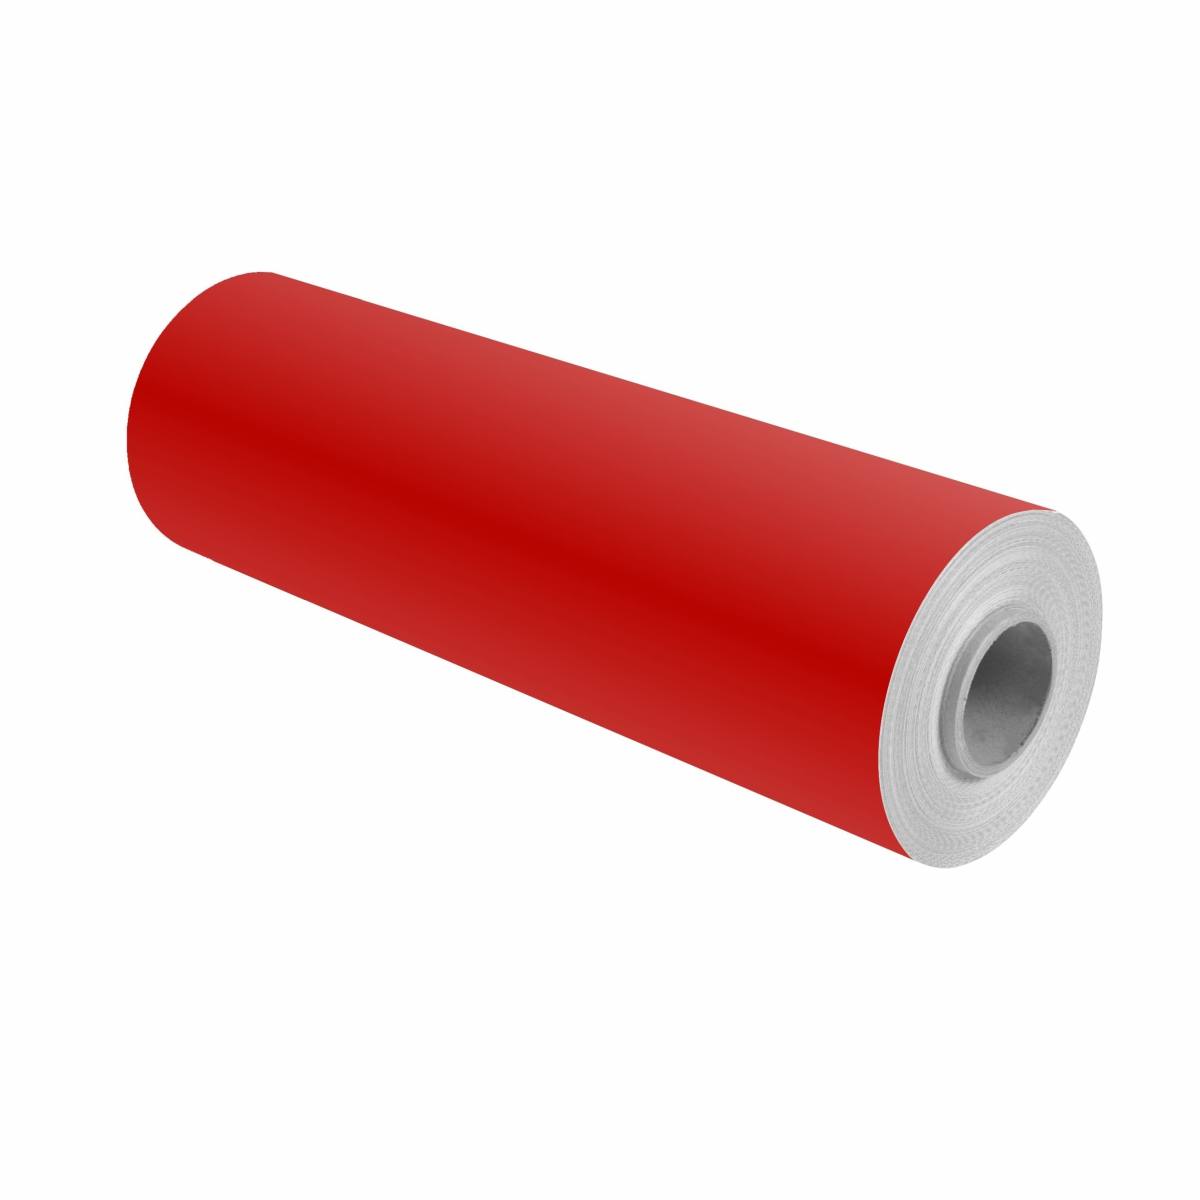 3M Scotchcal pellicola colorata 100-368/5 rosso chiaro 1,22 m x 25 m